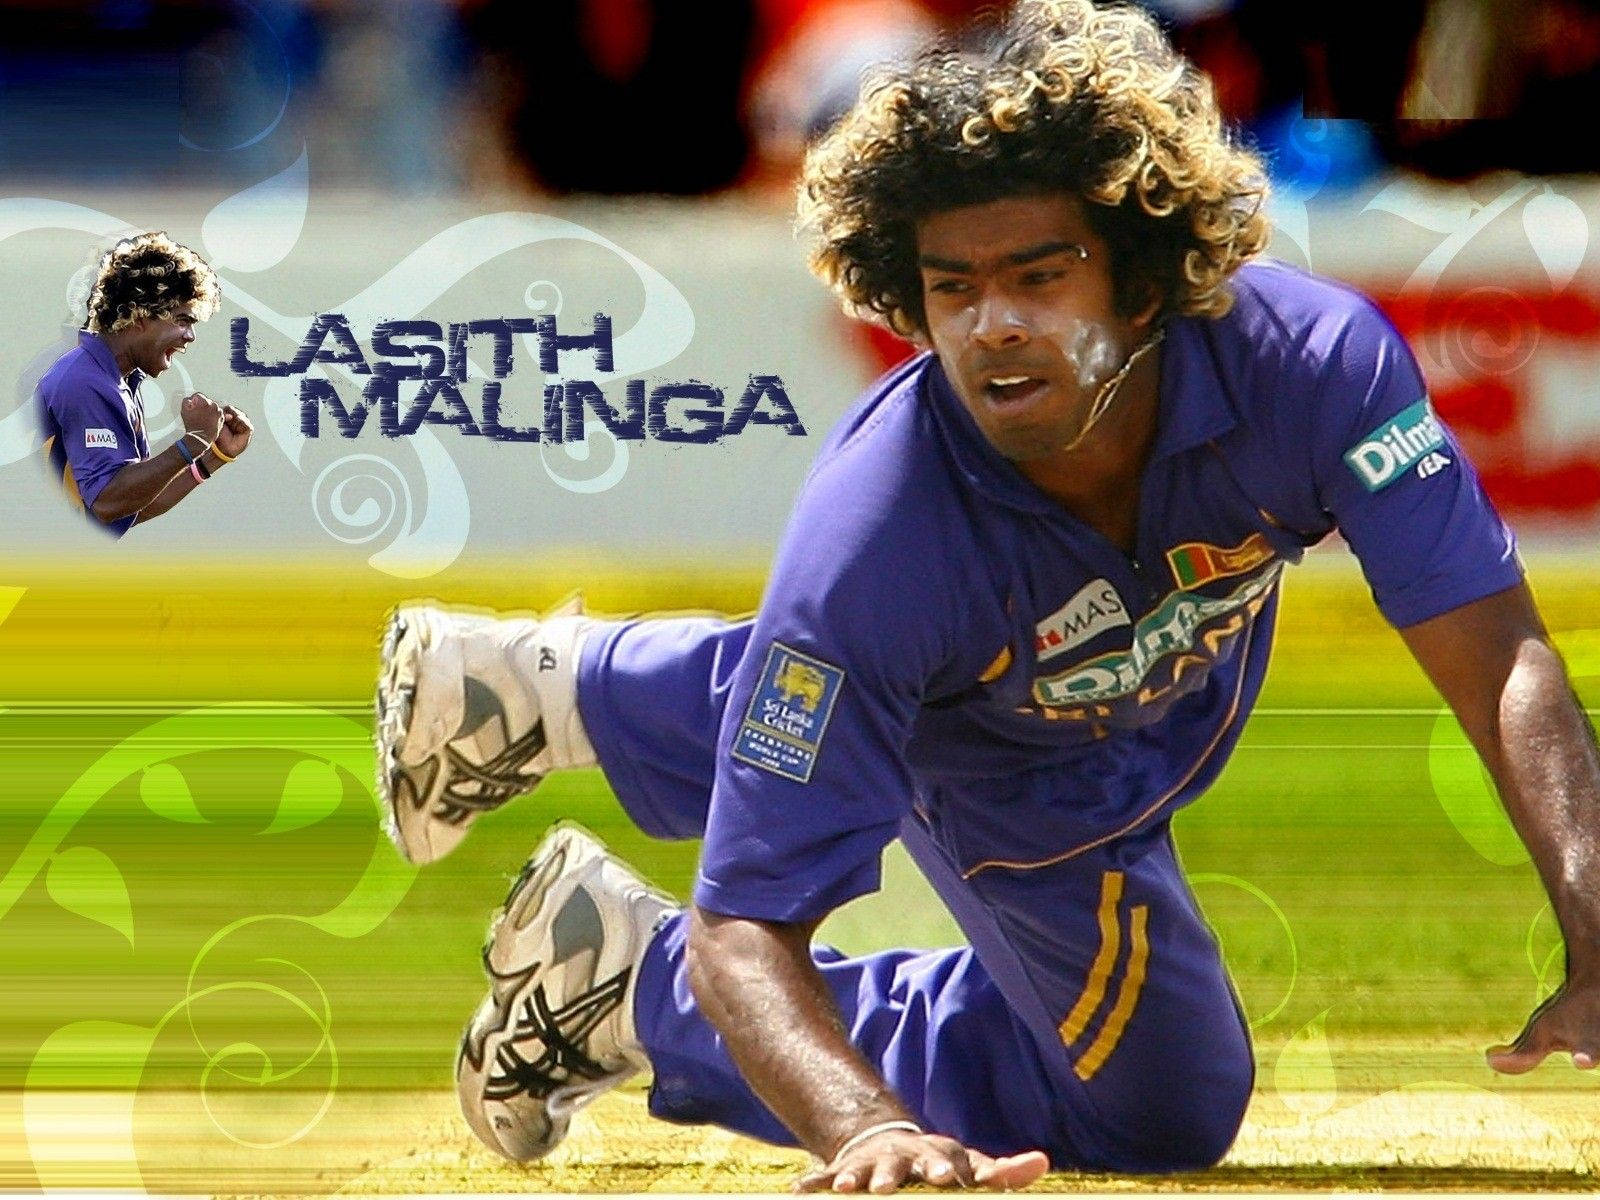 Malet Sri Lanka Cricket-tema med Lazy Maling. Wallpaper